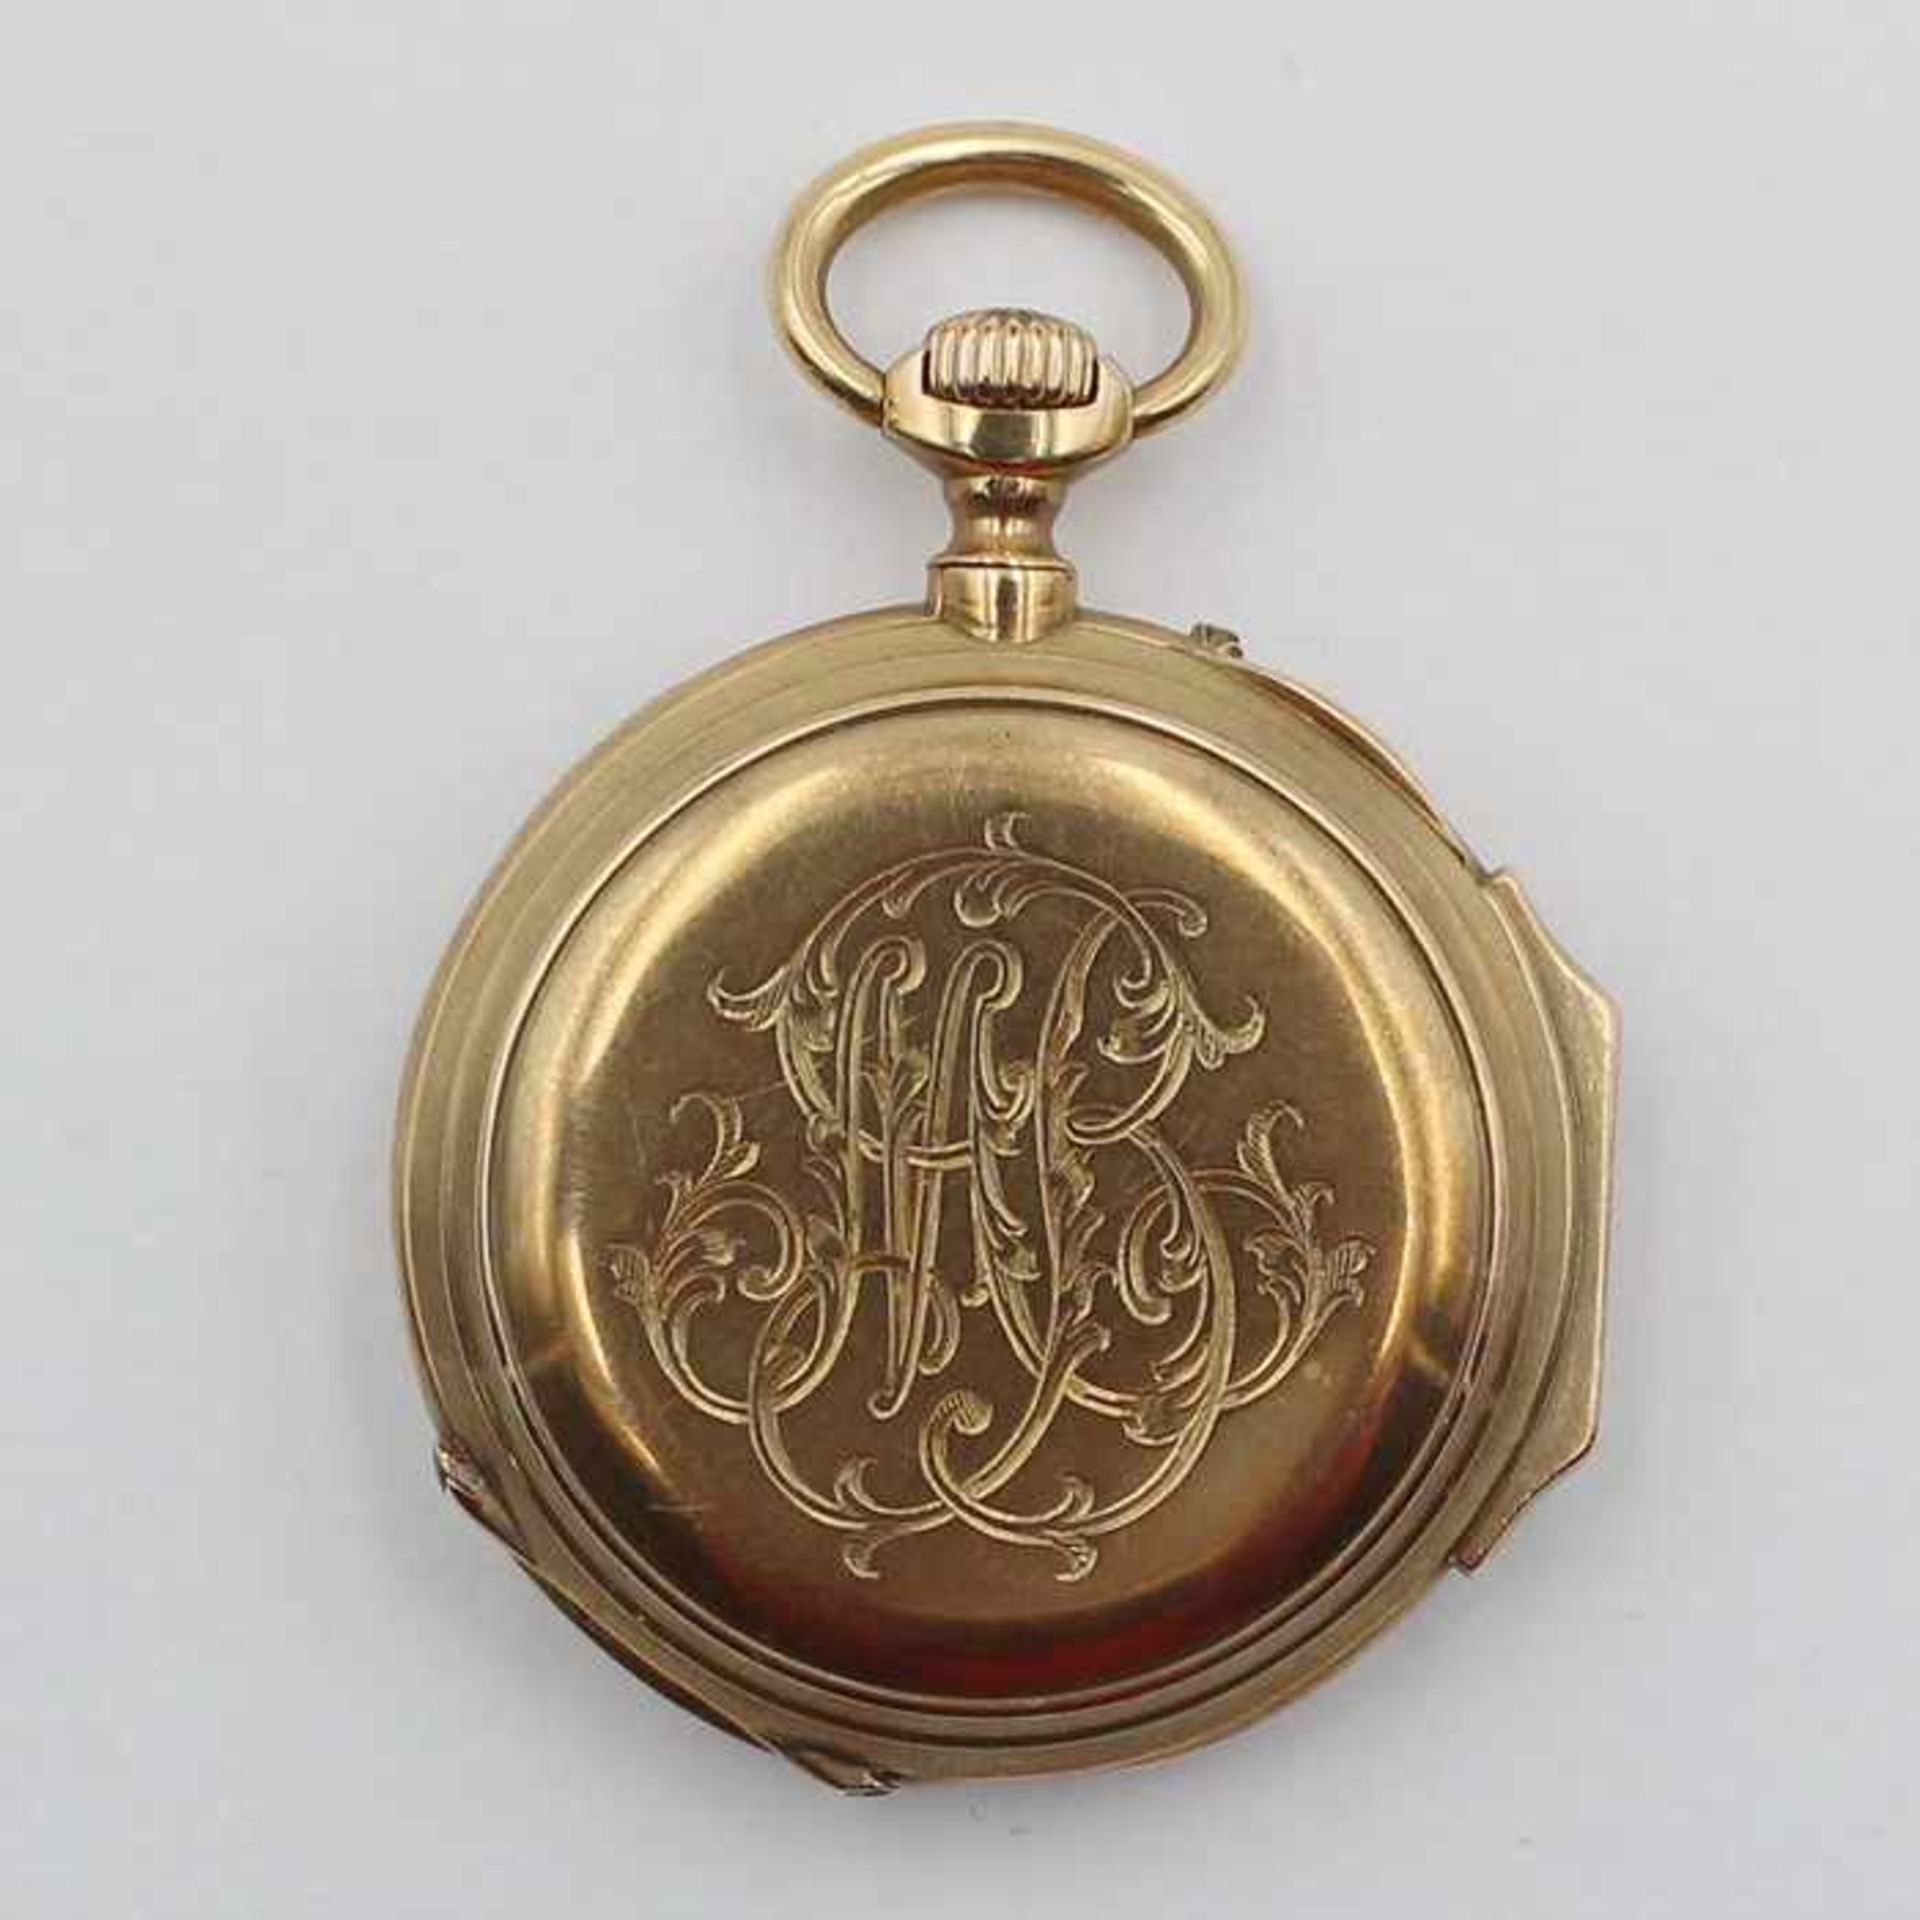 Damentaschenuhrum 1880, vergold., Lepine-Gehäuse, weißes Email-Zifferblatt, röm./arab. Ziffern, - Bild 2 aus 2